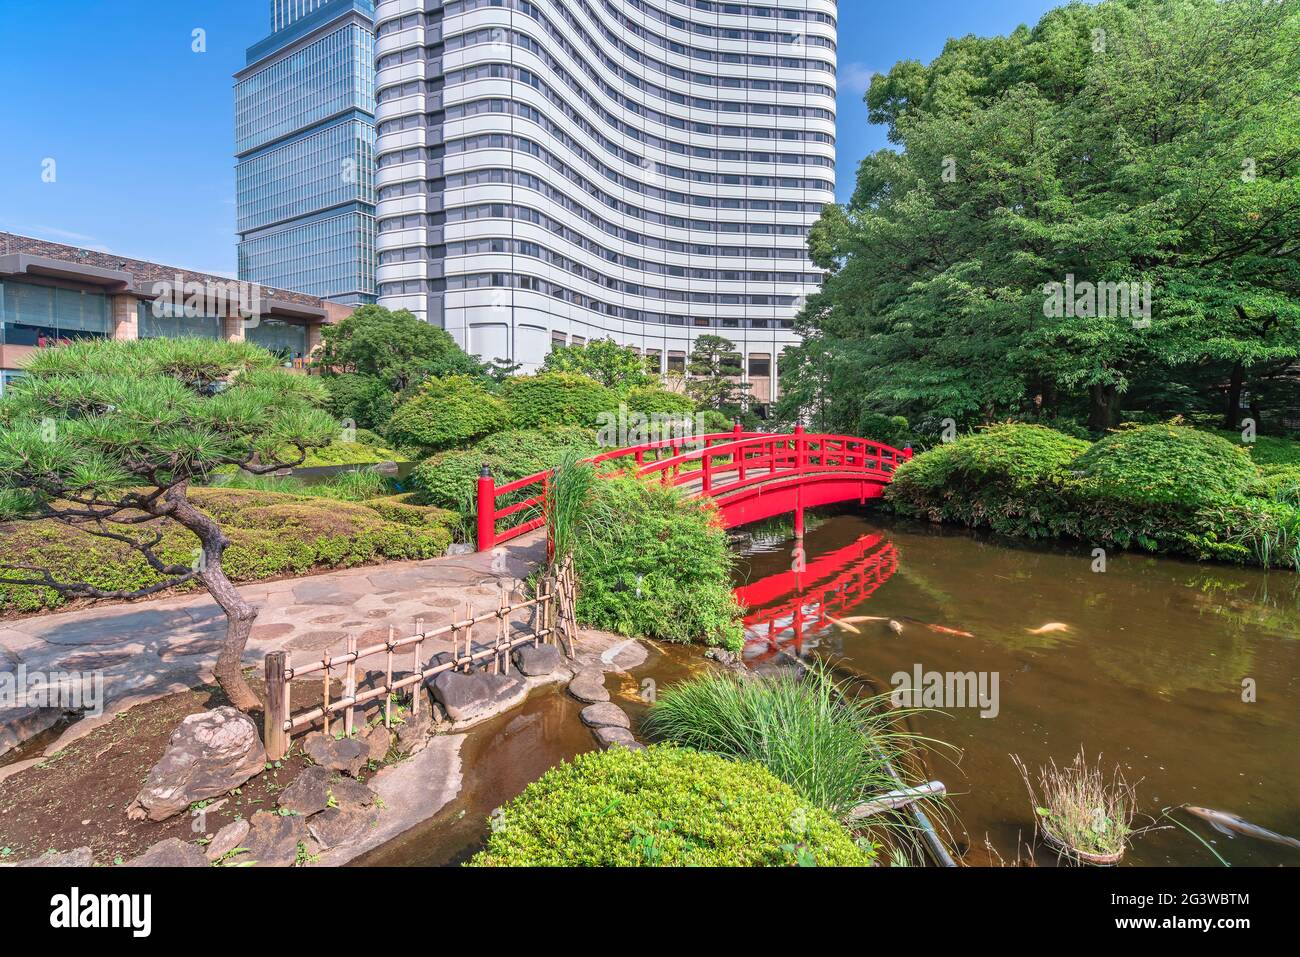 tokyo, giappone - luglio 17 2020: Carpe giapponesi che nuotano nello stagno Seisen-ike dell'Hotel New Otani Giardino Giapponese attraversato da un tradizionale Taikob rosso Foto Stock